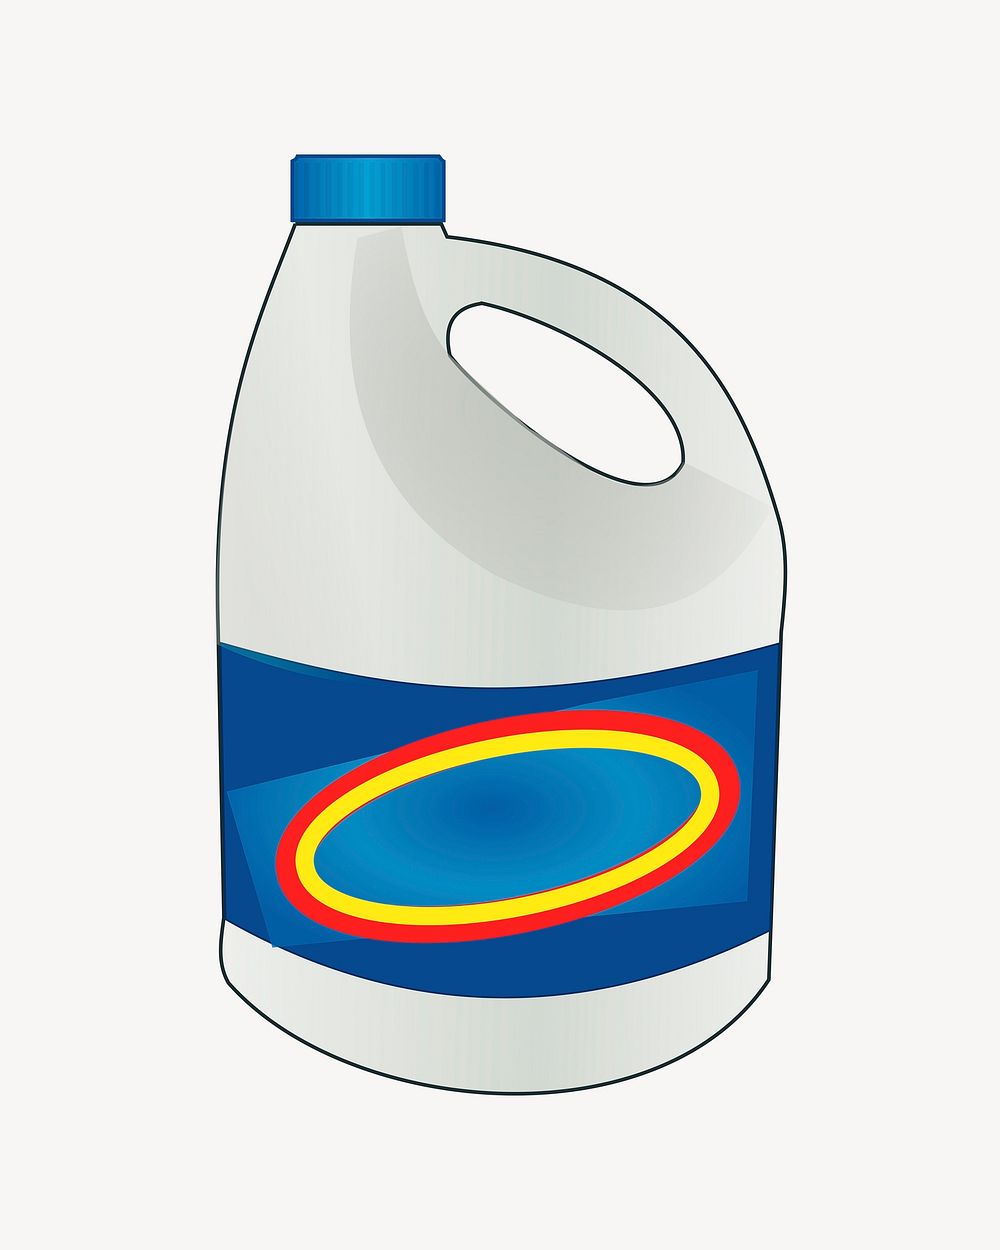 Bleach bottle clipart illustration vector. Free public domain CC0 image.